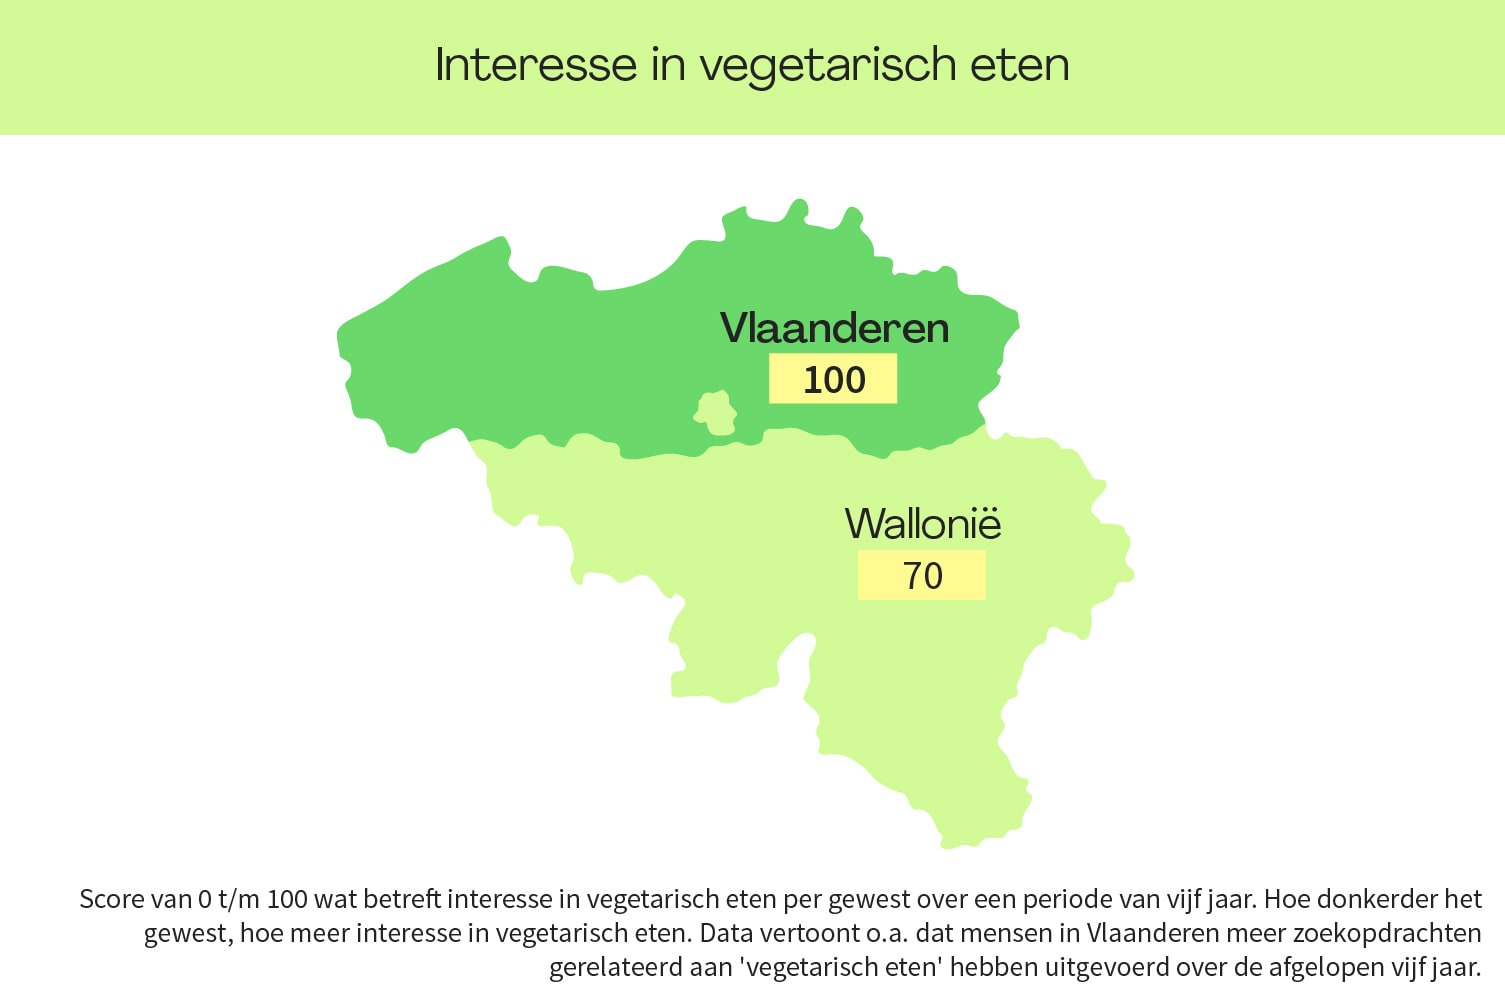 Meer interesse in vegetarisch eten in Vlaanderen